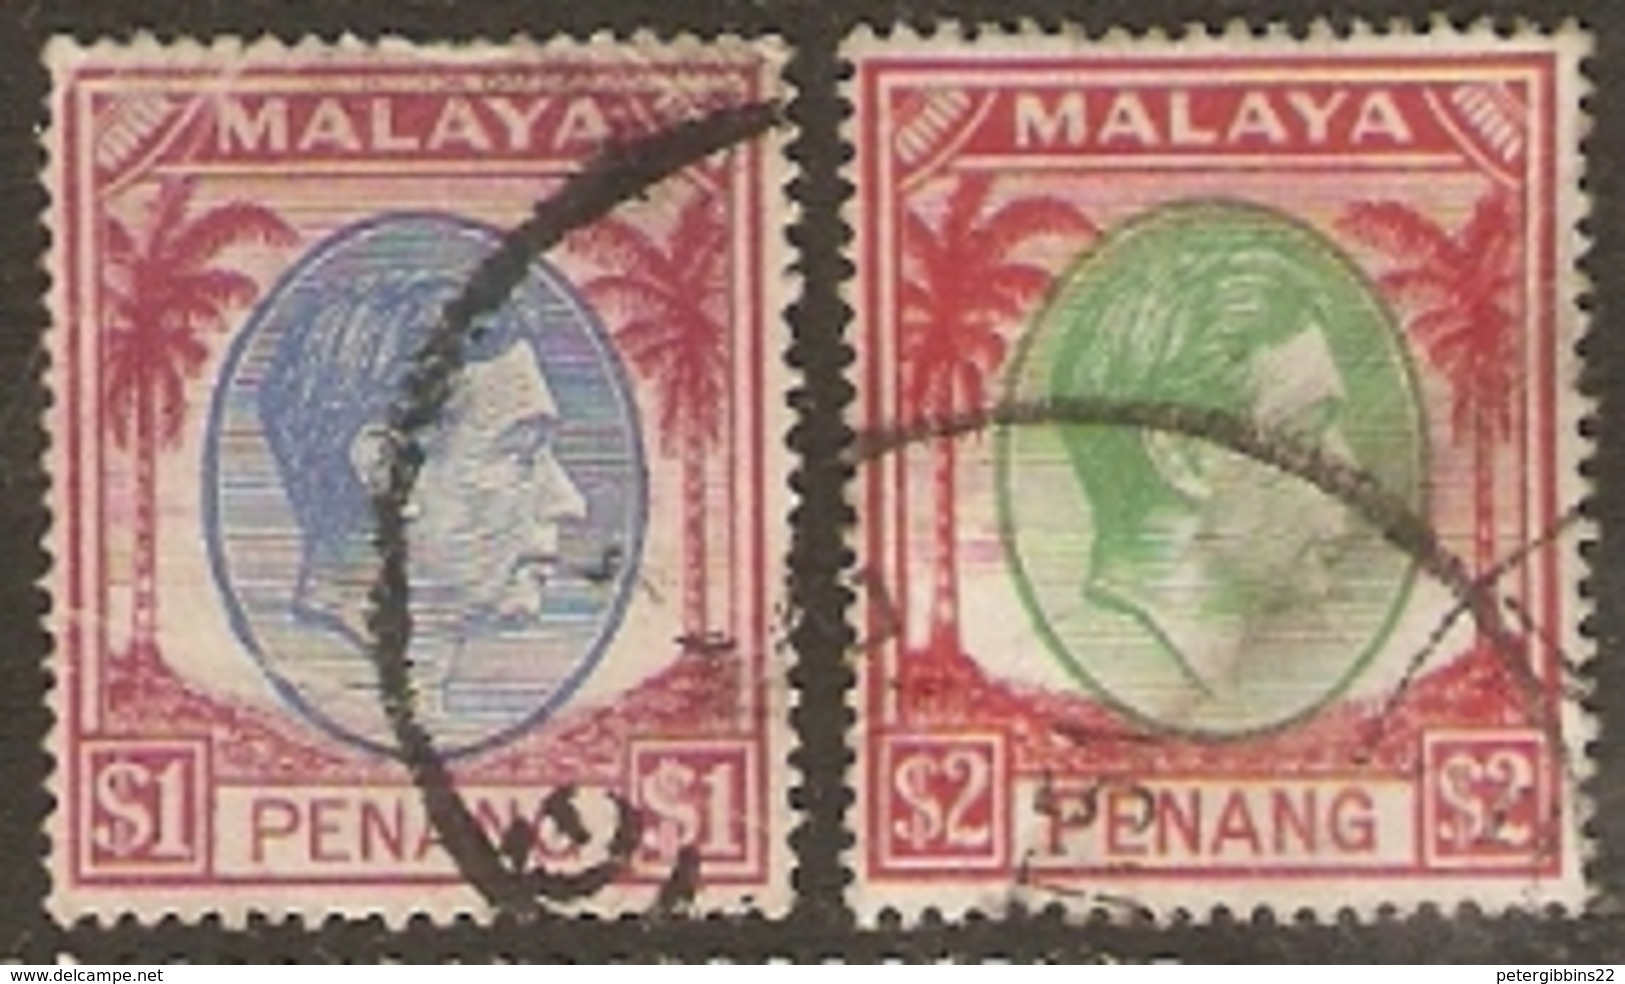 Malaya  Penang    1949    SG  20,21 $1,$2  Fine Used - Penang